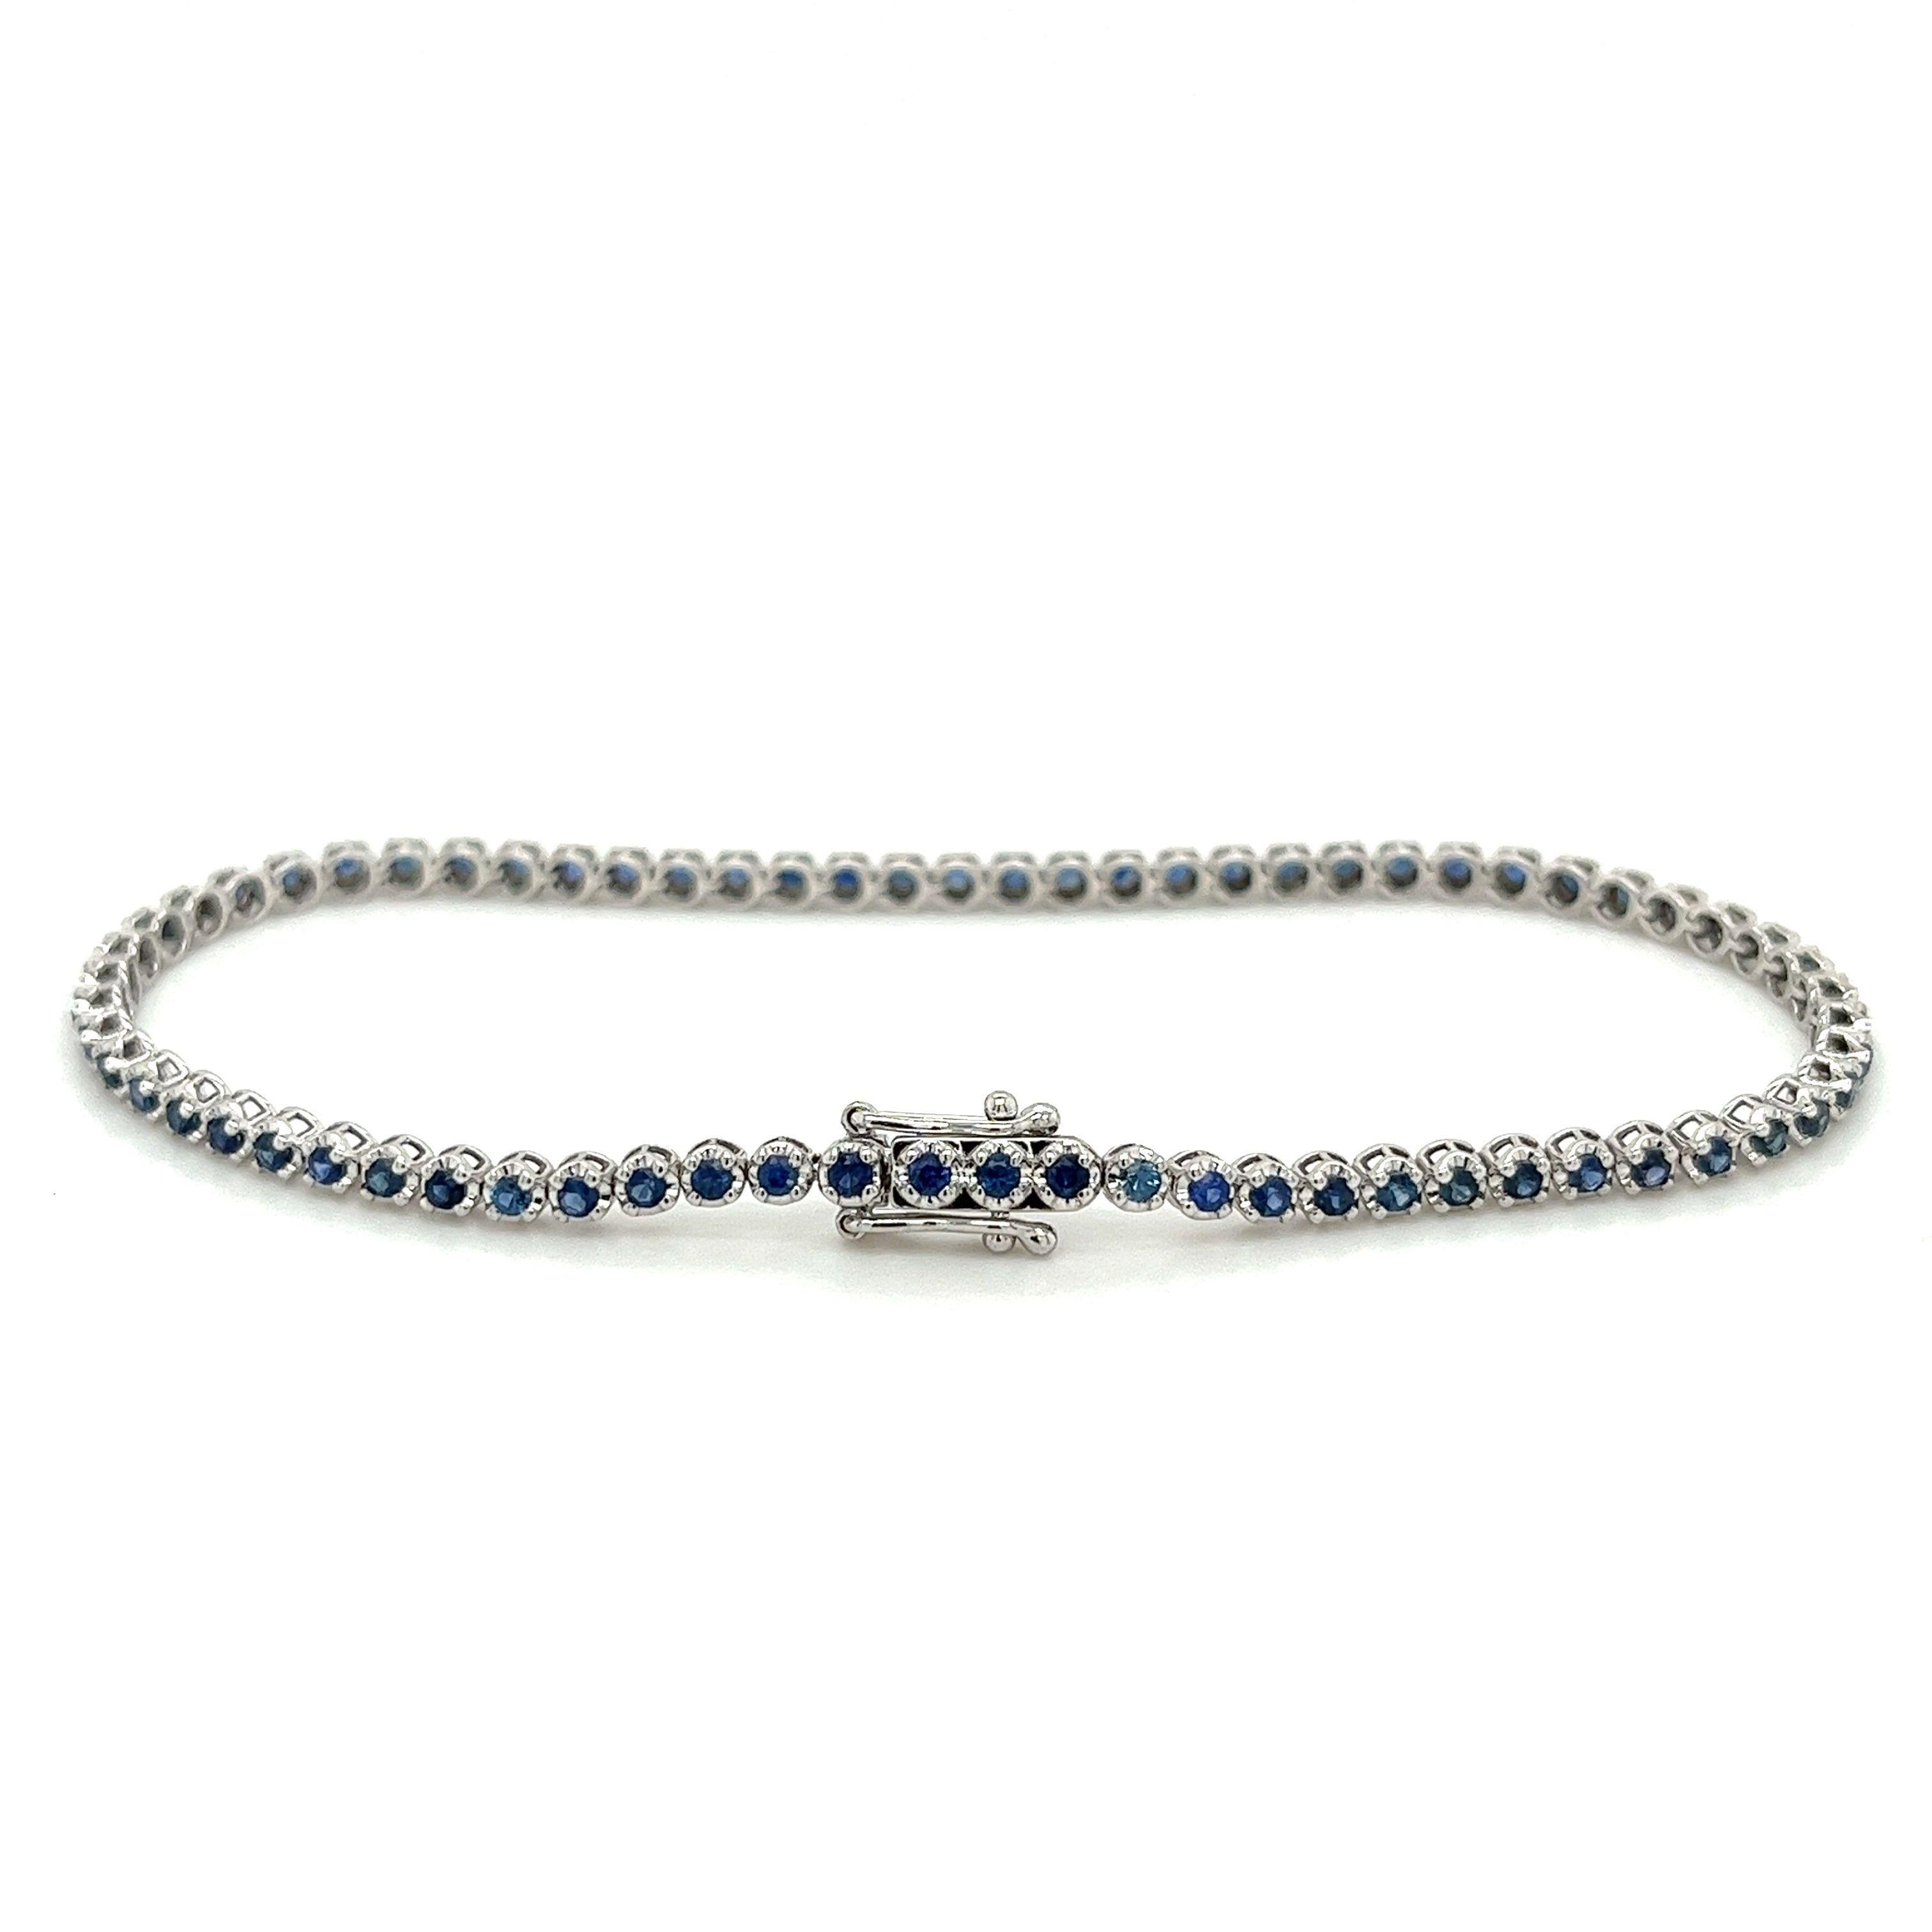 Notre superbe bracelet tennis en saphir bleu de forme ronde est la quintessence du luxe et de l'élégance. Réalisé en or blanc 14 carats, ce bracelet élégant et raffiné est orné de 69 saphirs bleus ronds totalisant 1,67 carats.

Les magnifiques